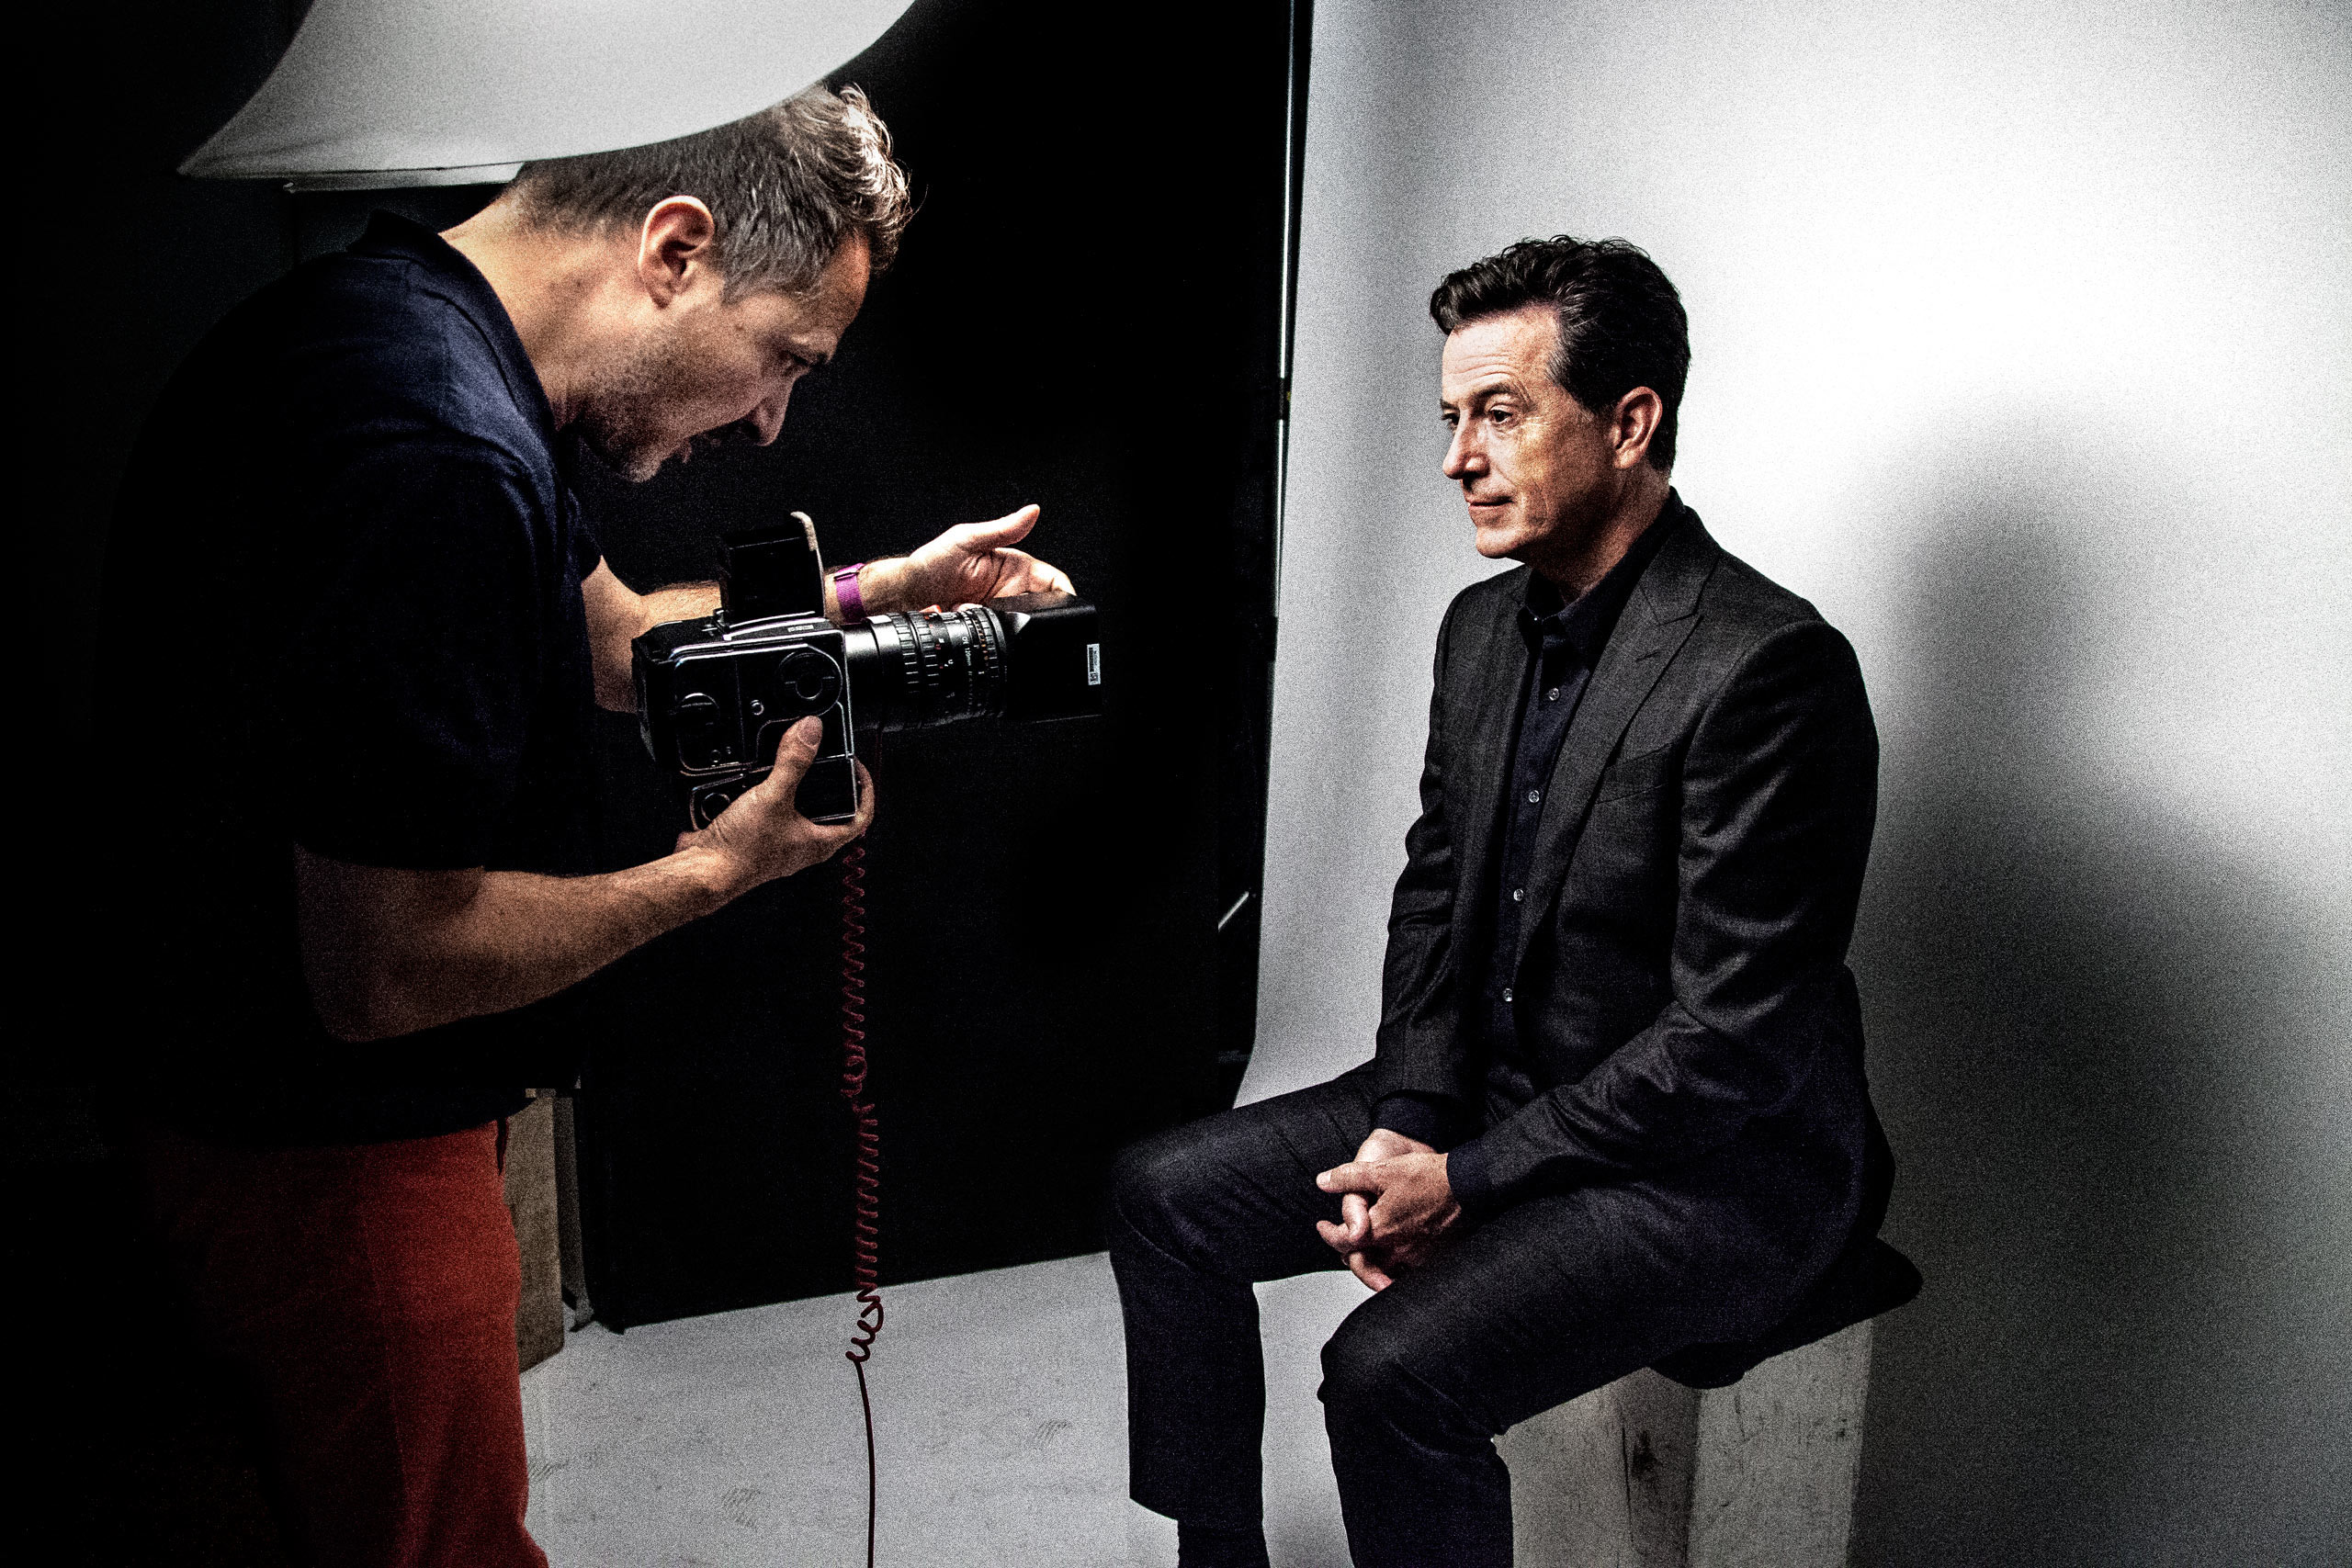 Platon photographing Stephen Colbert at his studio. (Cory Vanderploeg)